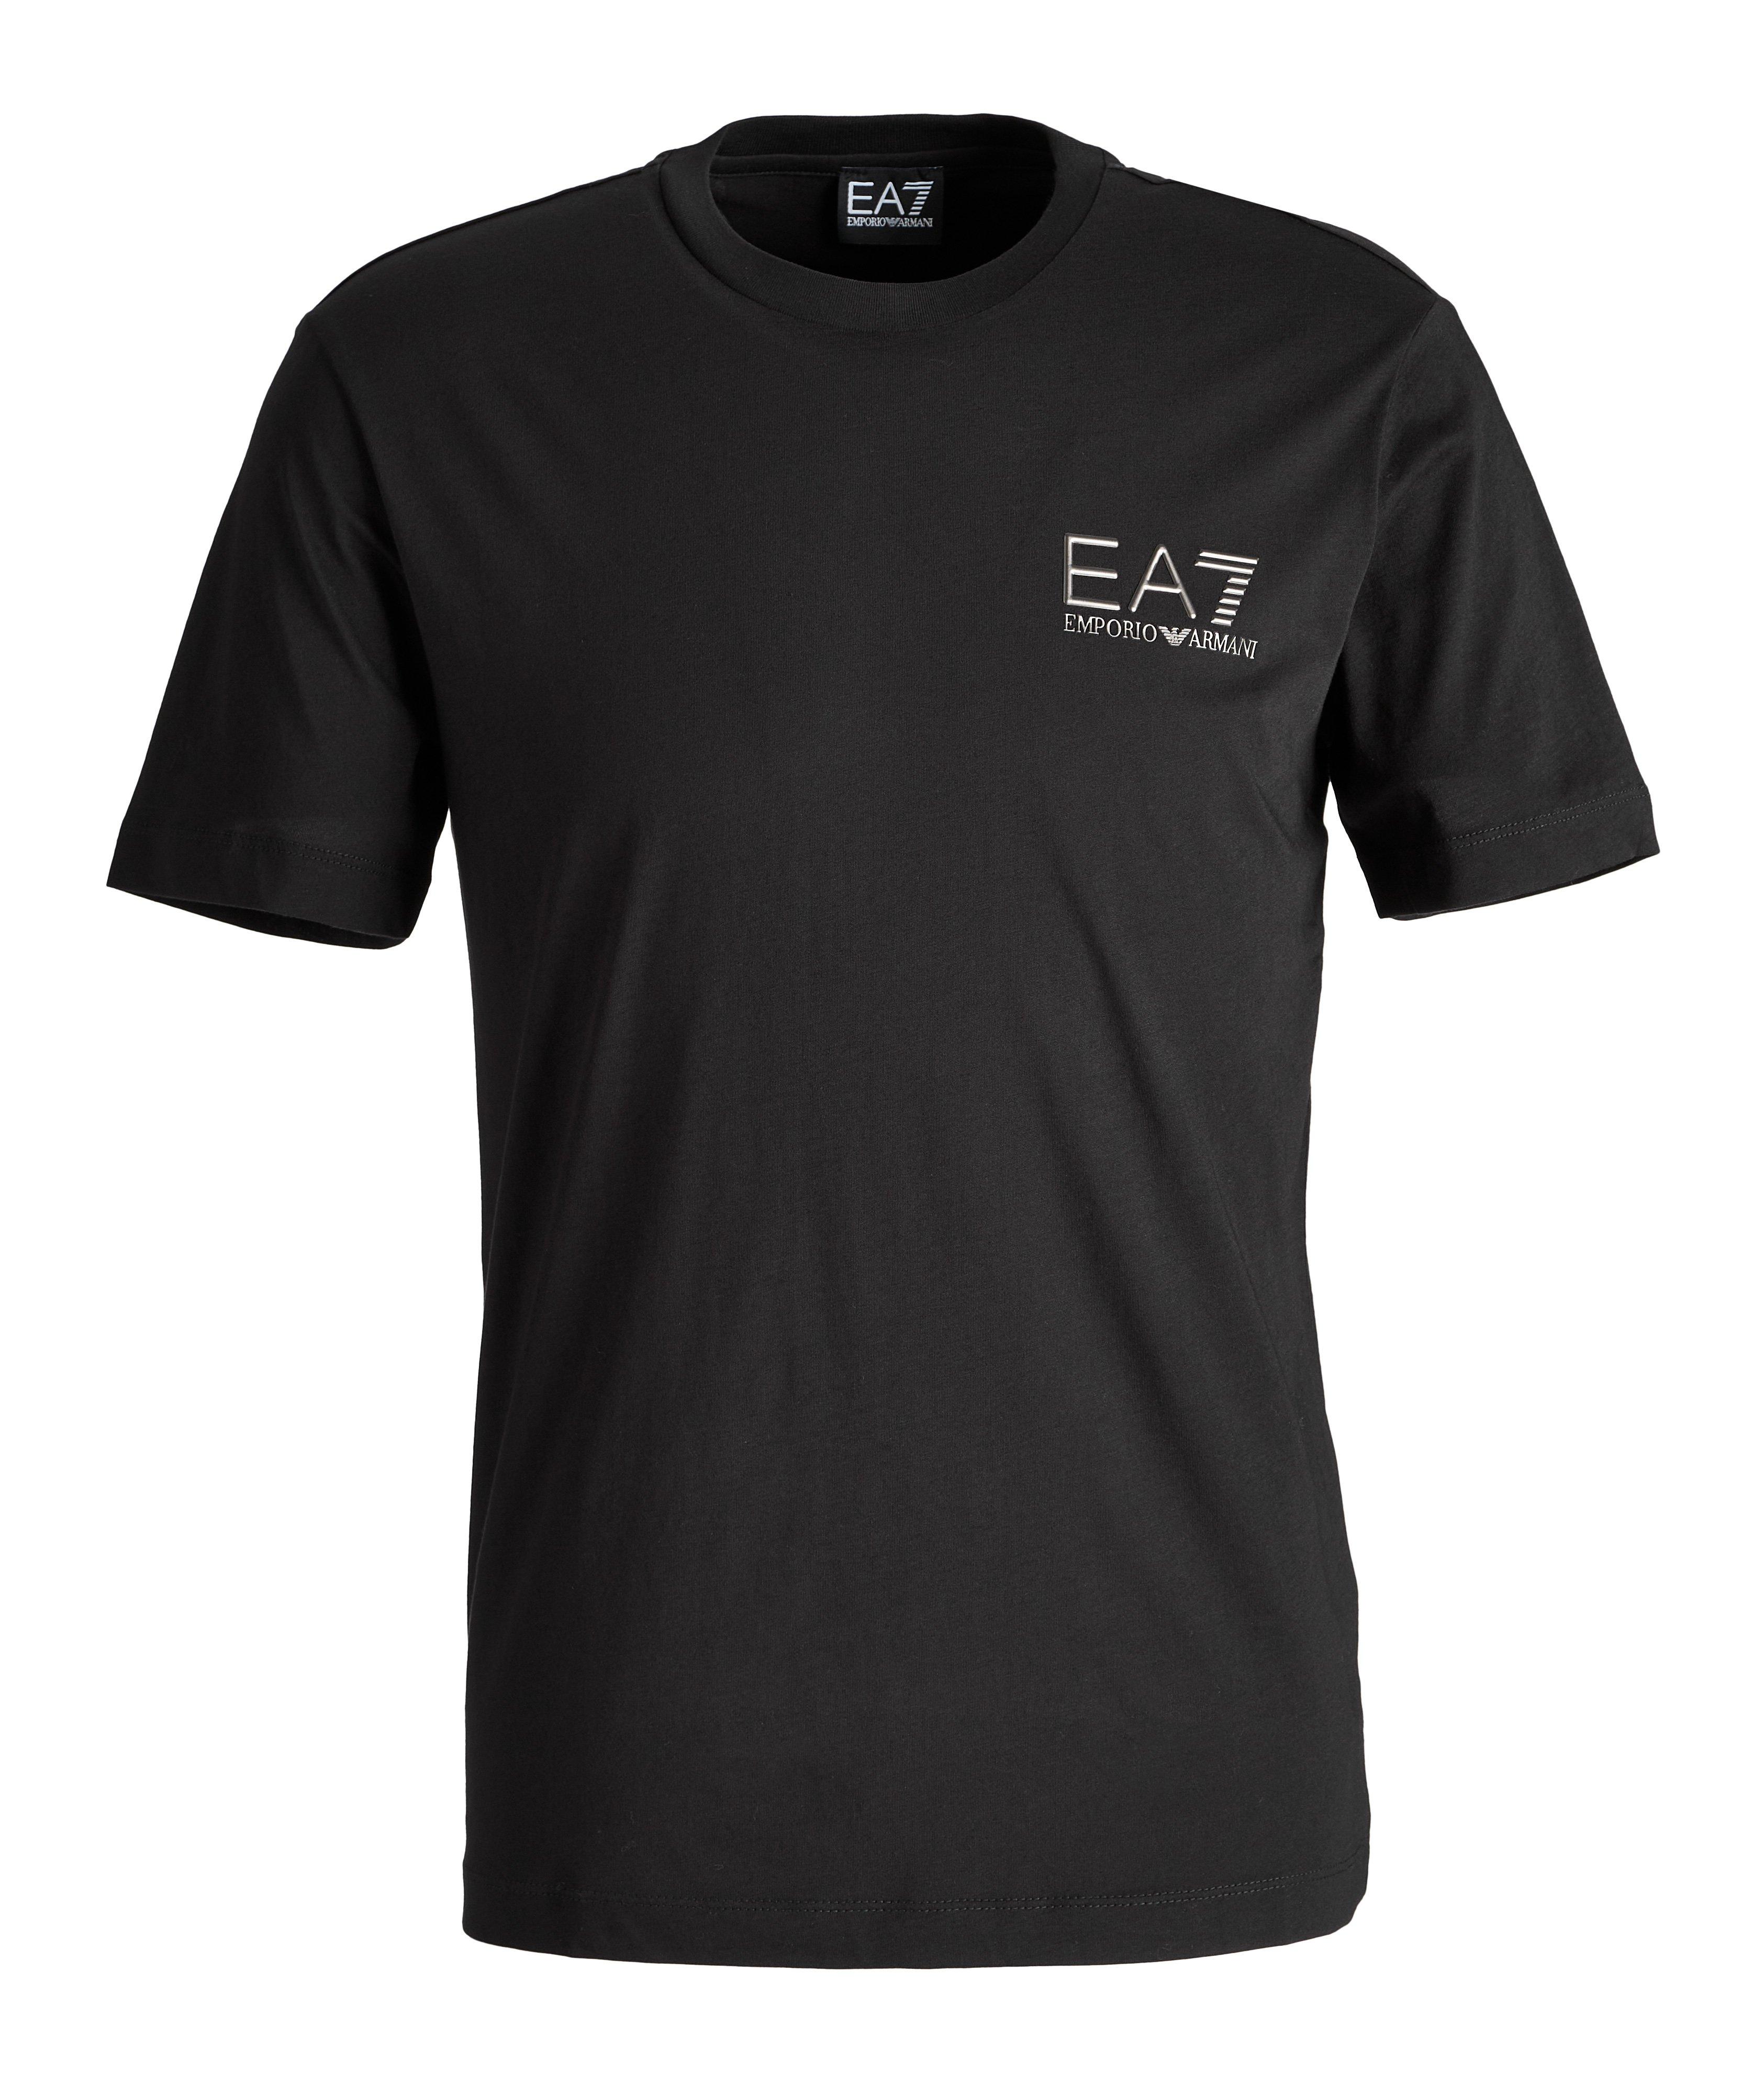 EA7 Logo Cotton T-Shirt image 0